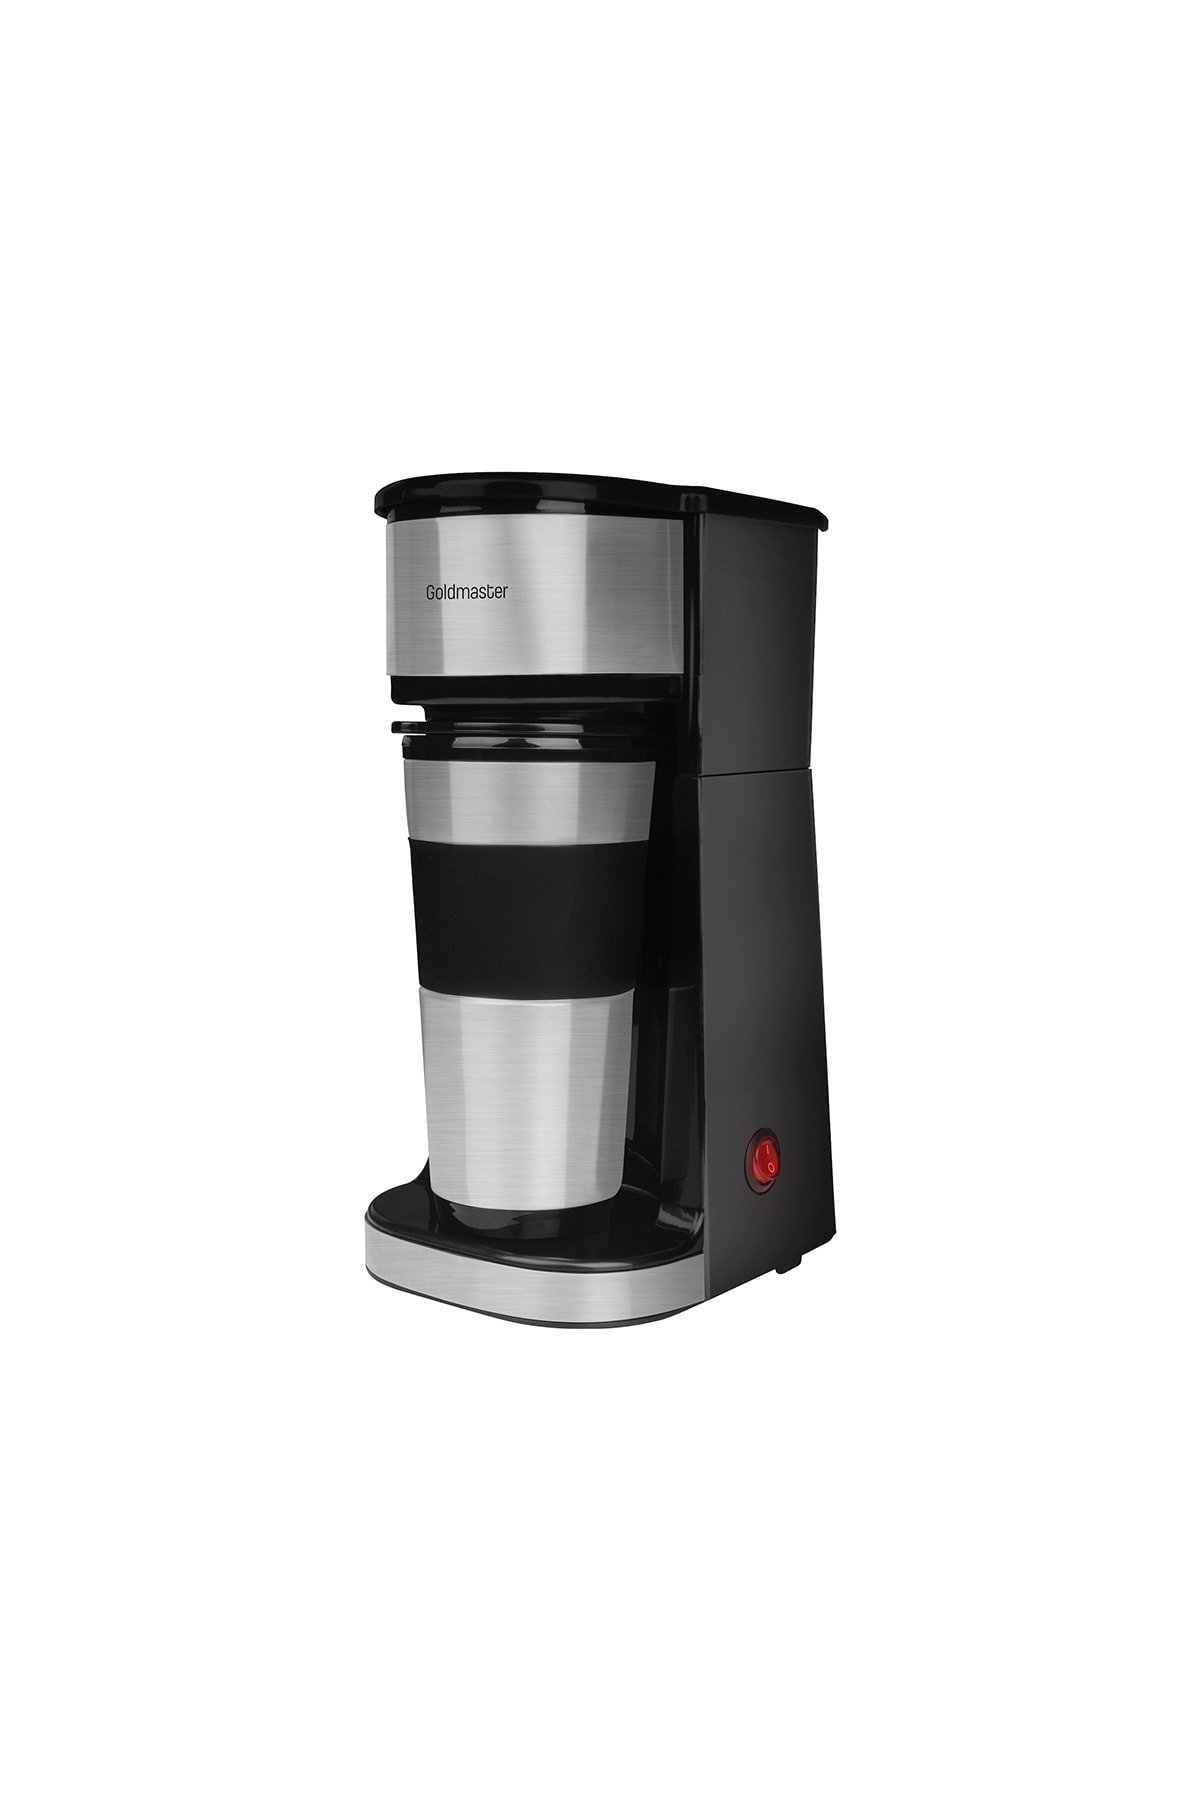 GoldMaster Karnaval Filtre Kahve Makinesi